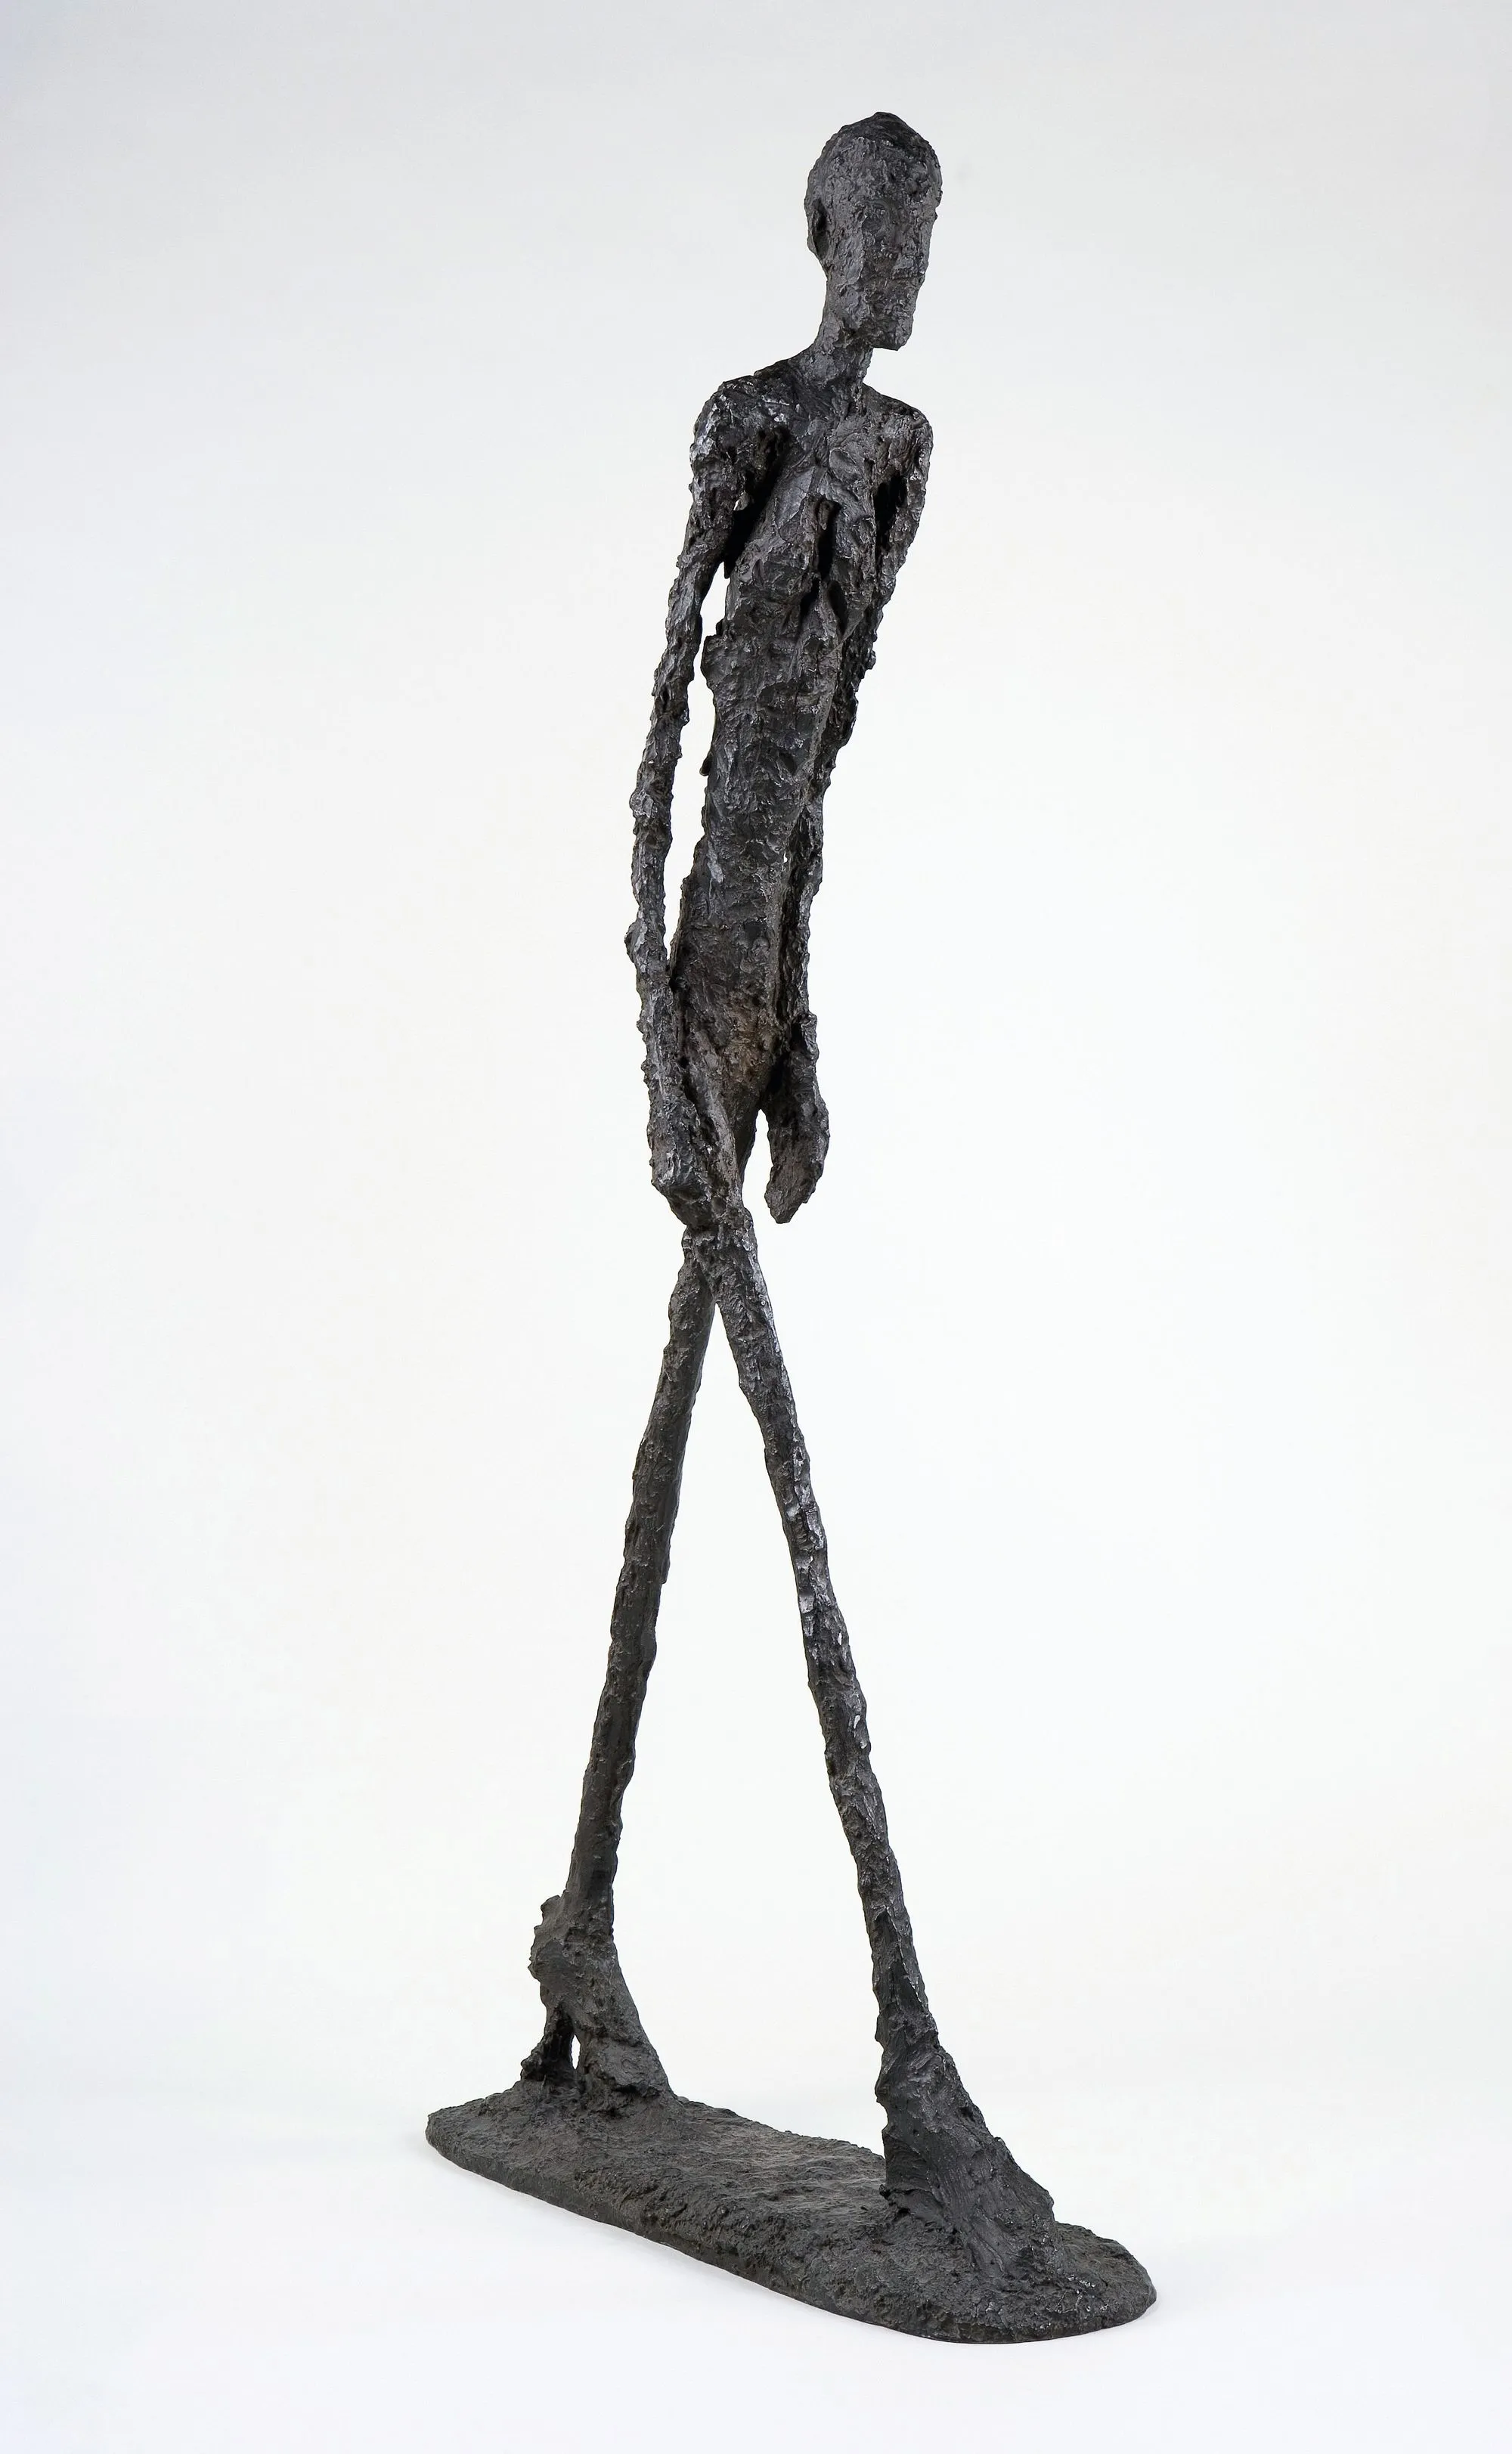 Alberto Giacometti,
L'Homme qui marche, 1960,
bronze, 183 cm.